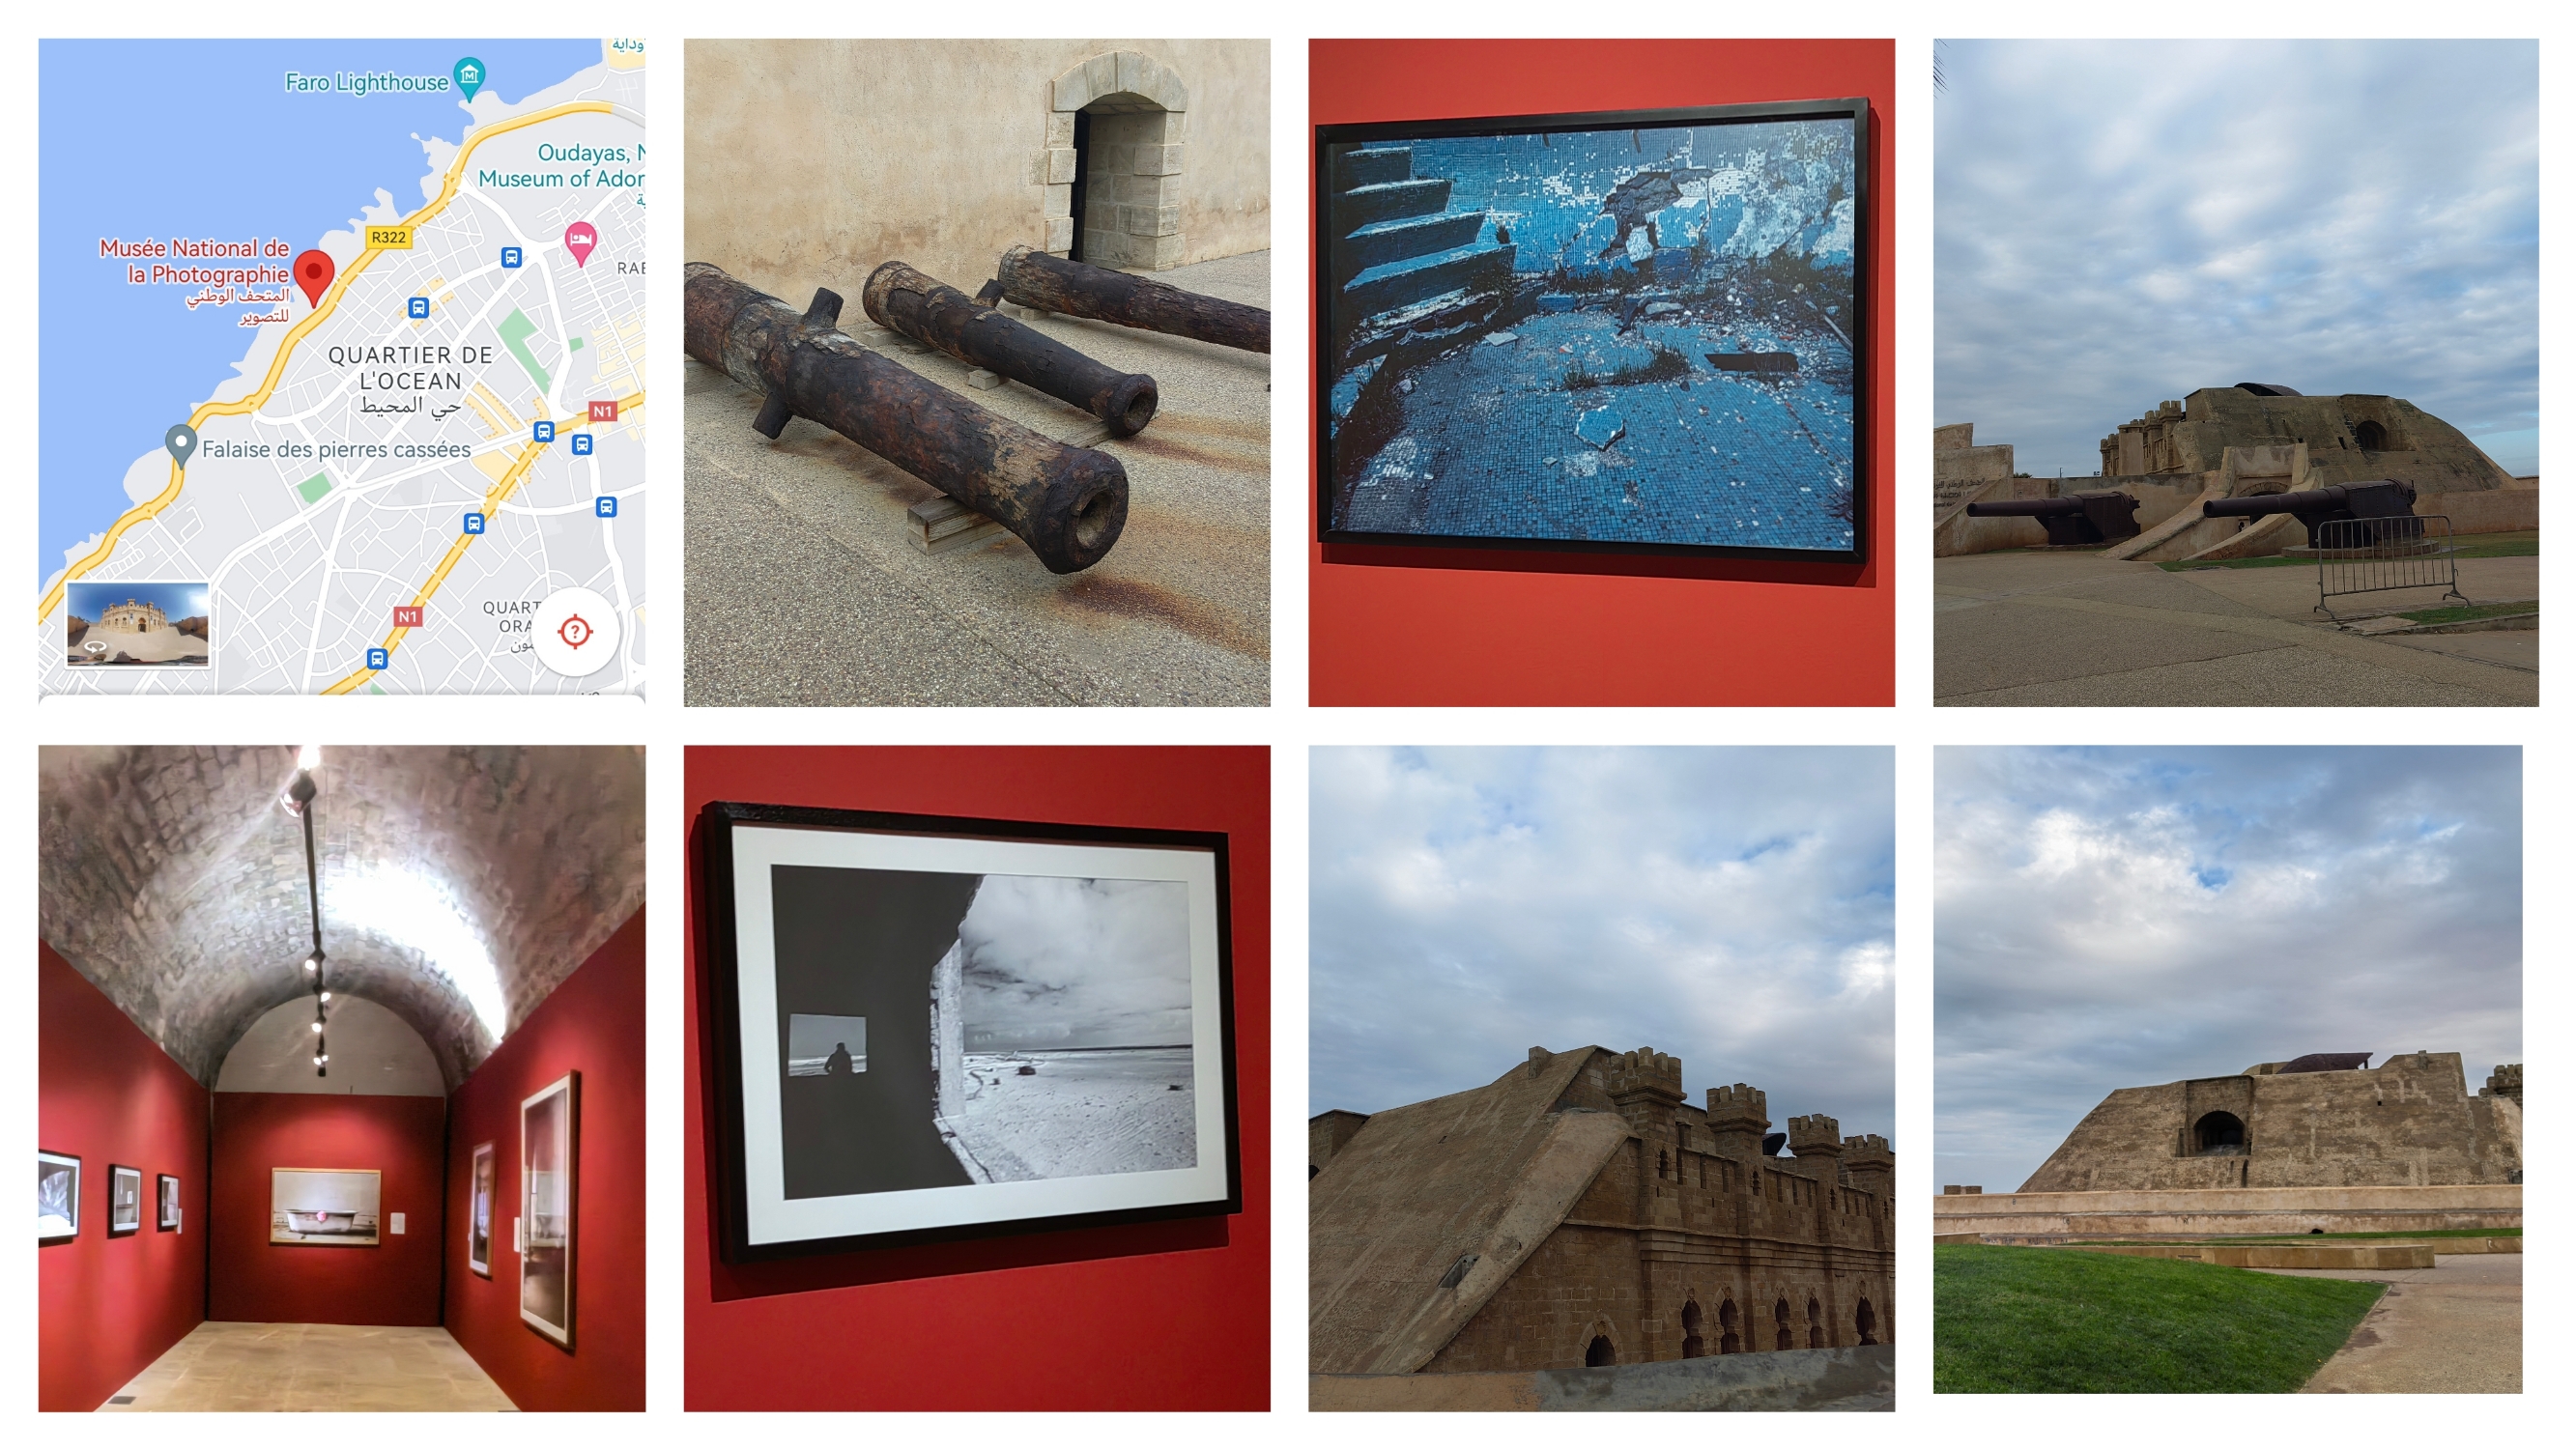 参观摩洛哥拉巴特国家照片博物馆